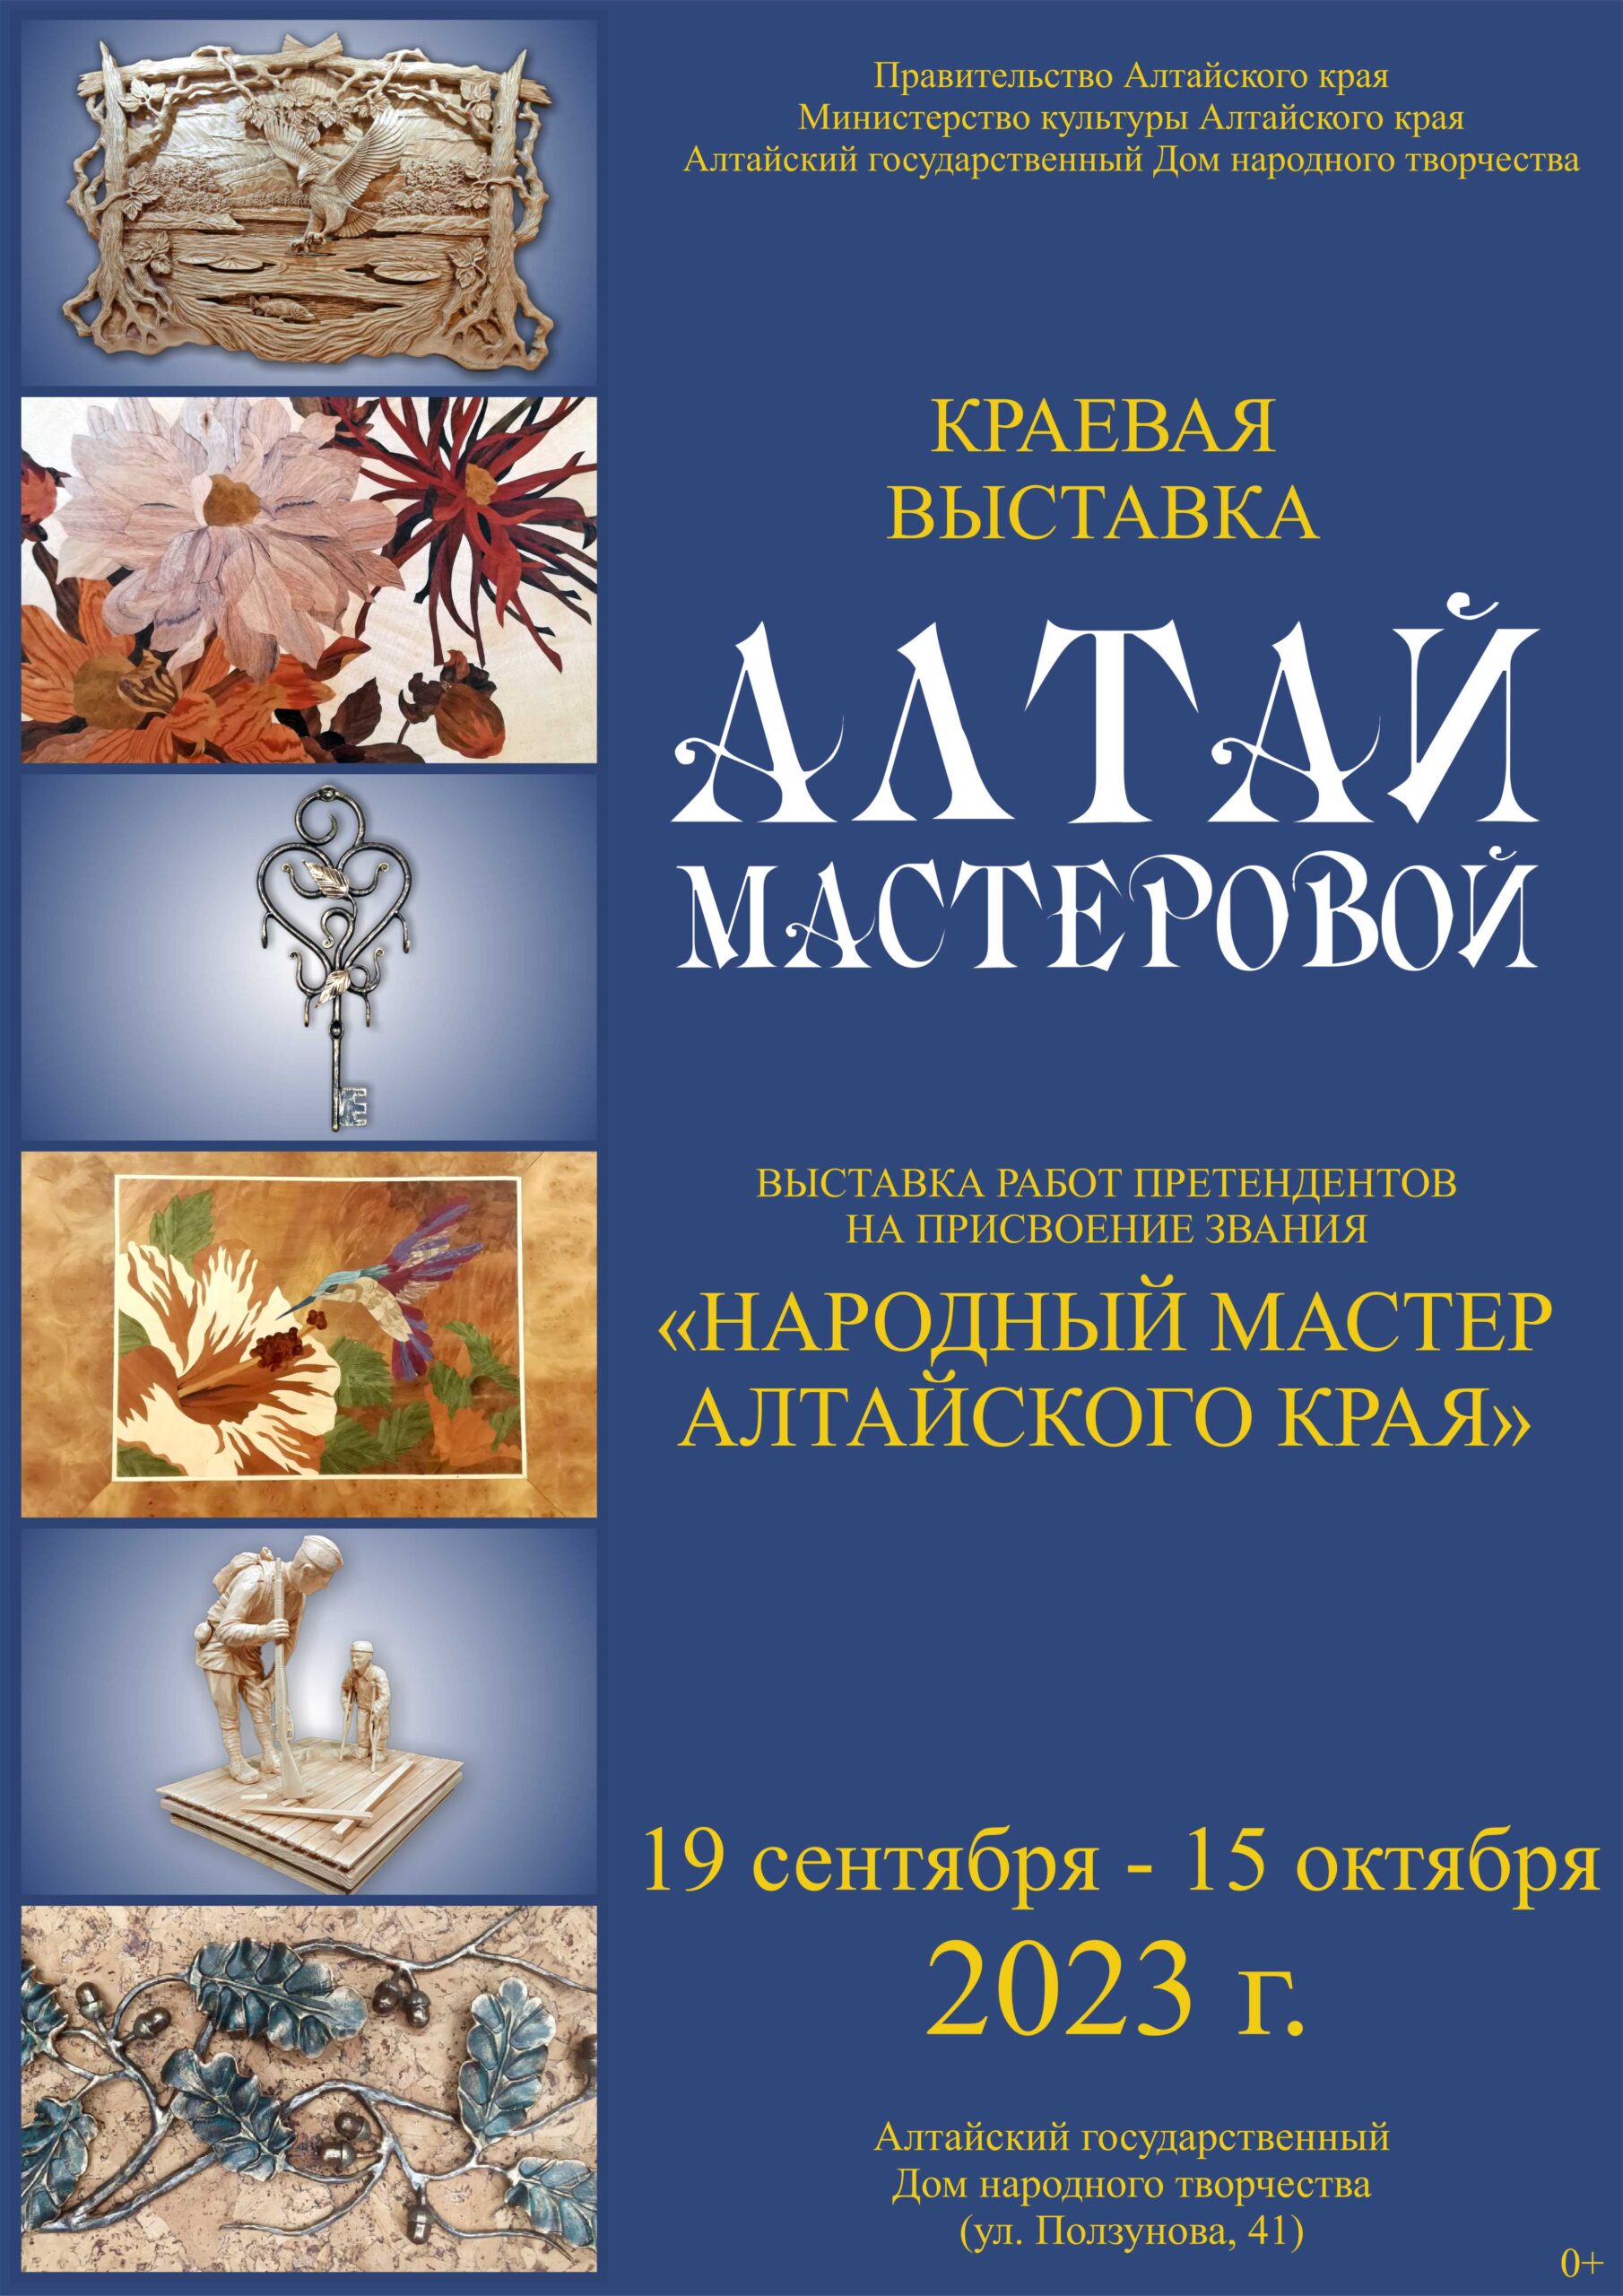 В Барнауле открылась выставка «Алтай мастеровой»